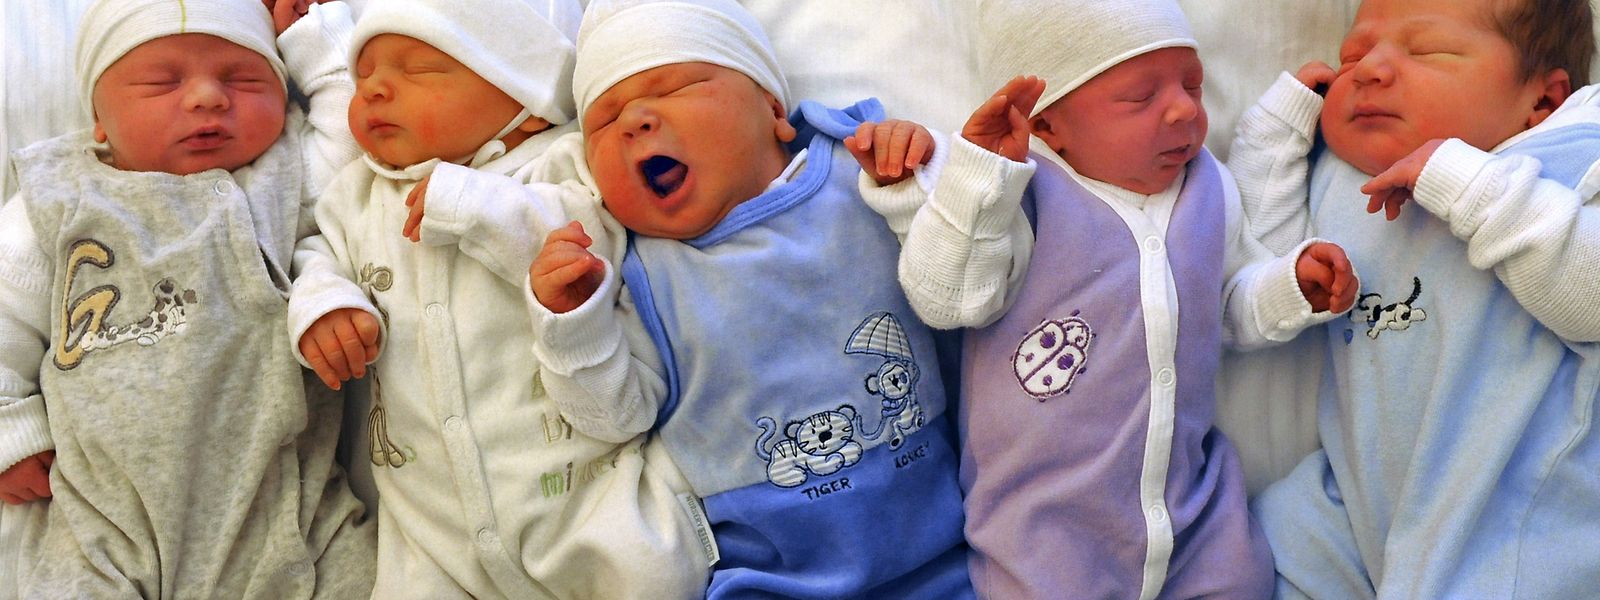 Luxemburgs Bevölkerung wächst. Die Gründe liegen weniger in der Geburtenrate als vielmehr bei der Nettozuwanderung.  